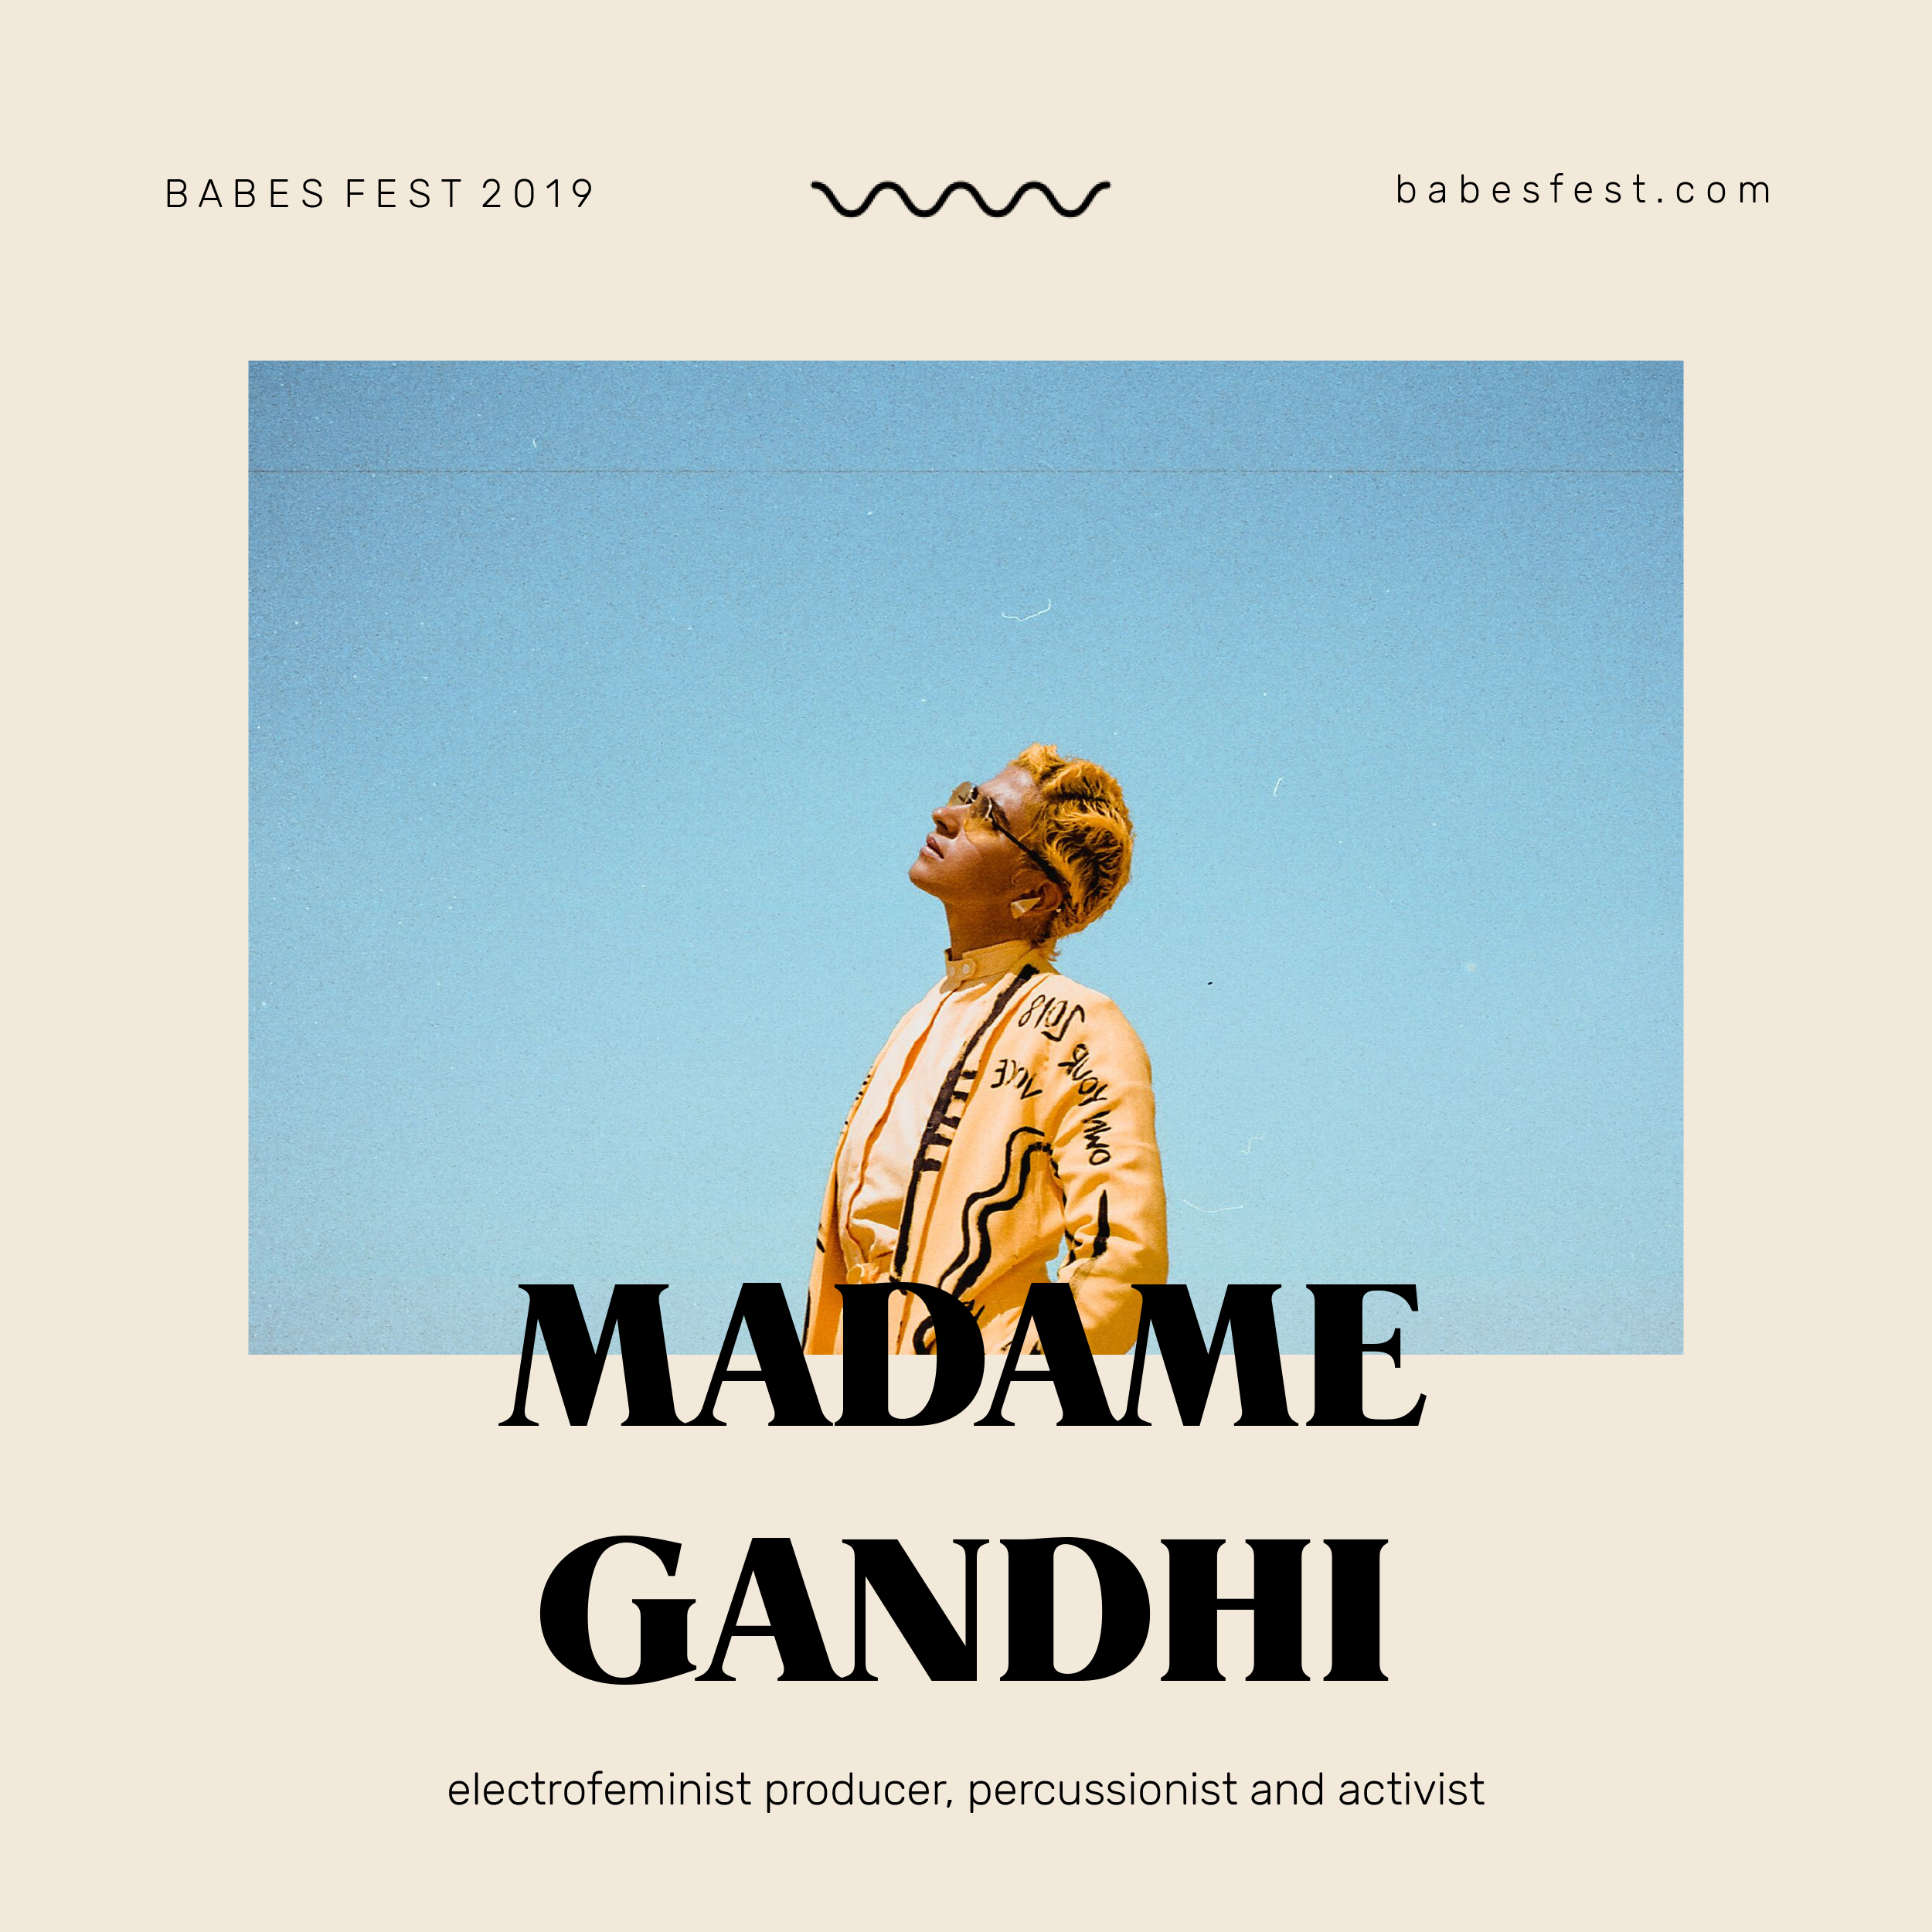 Madame Gandhi